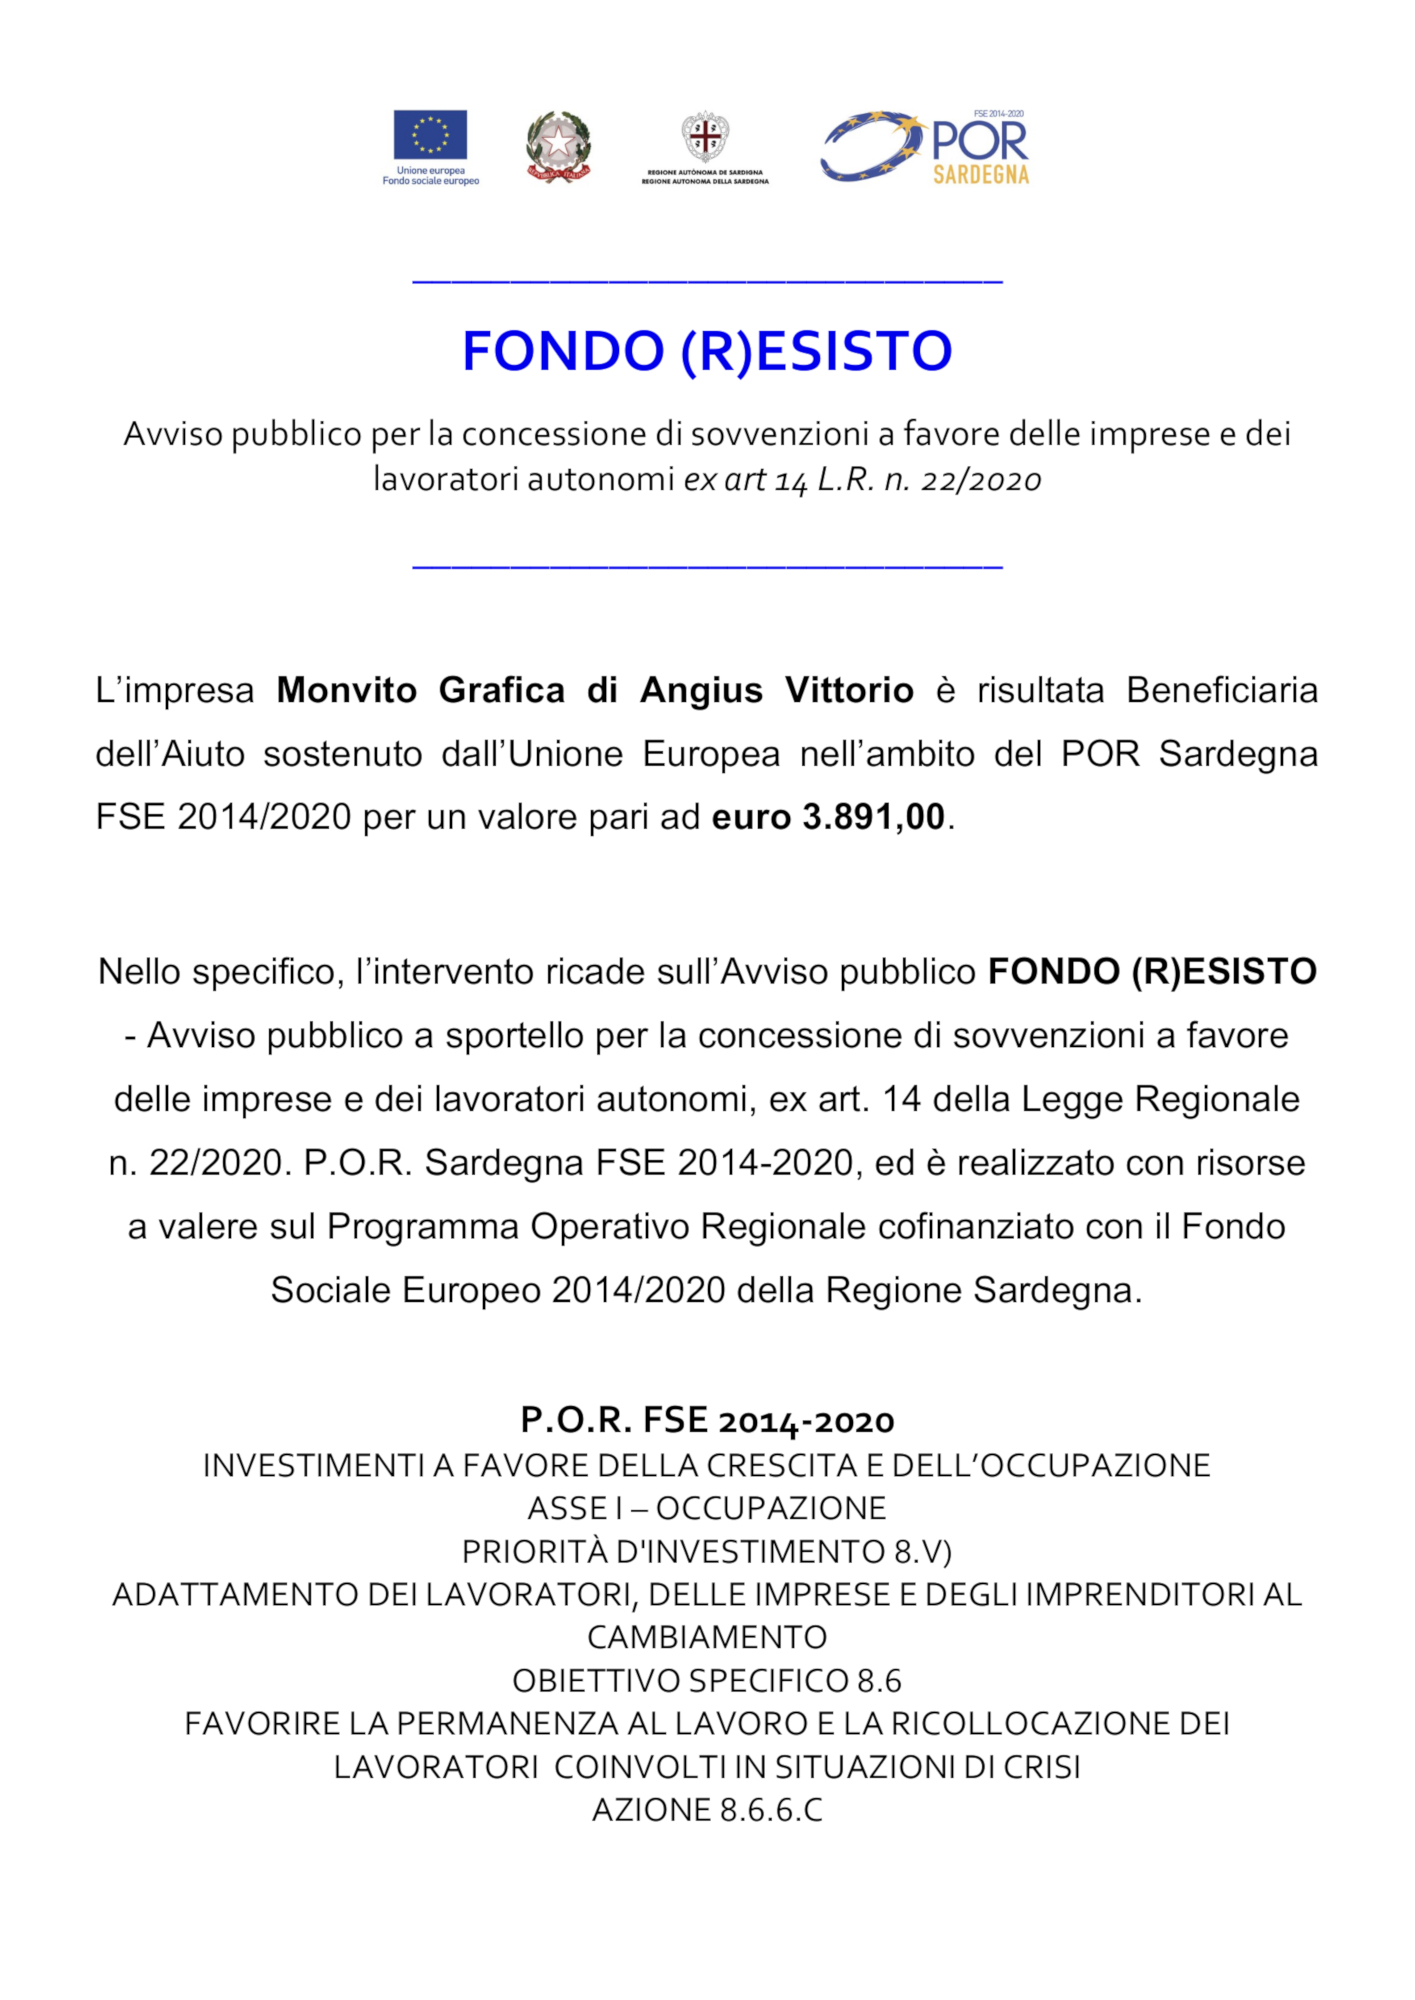 Poster formato A3 Fondo Resisto - Monvitografica di Angius Vittorio